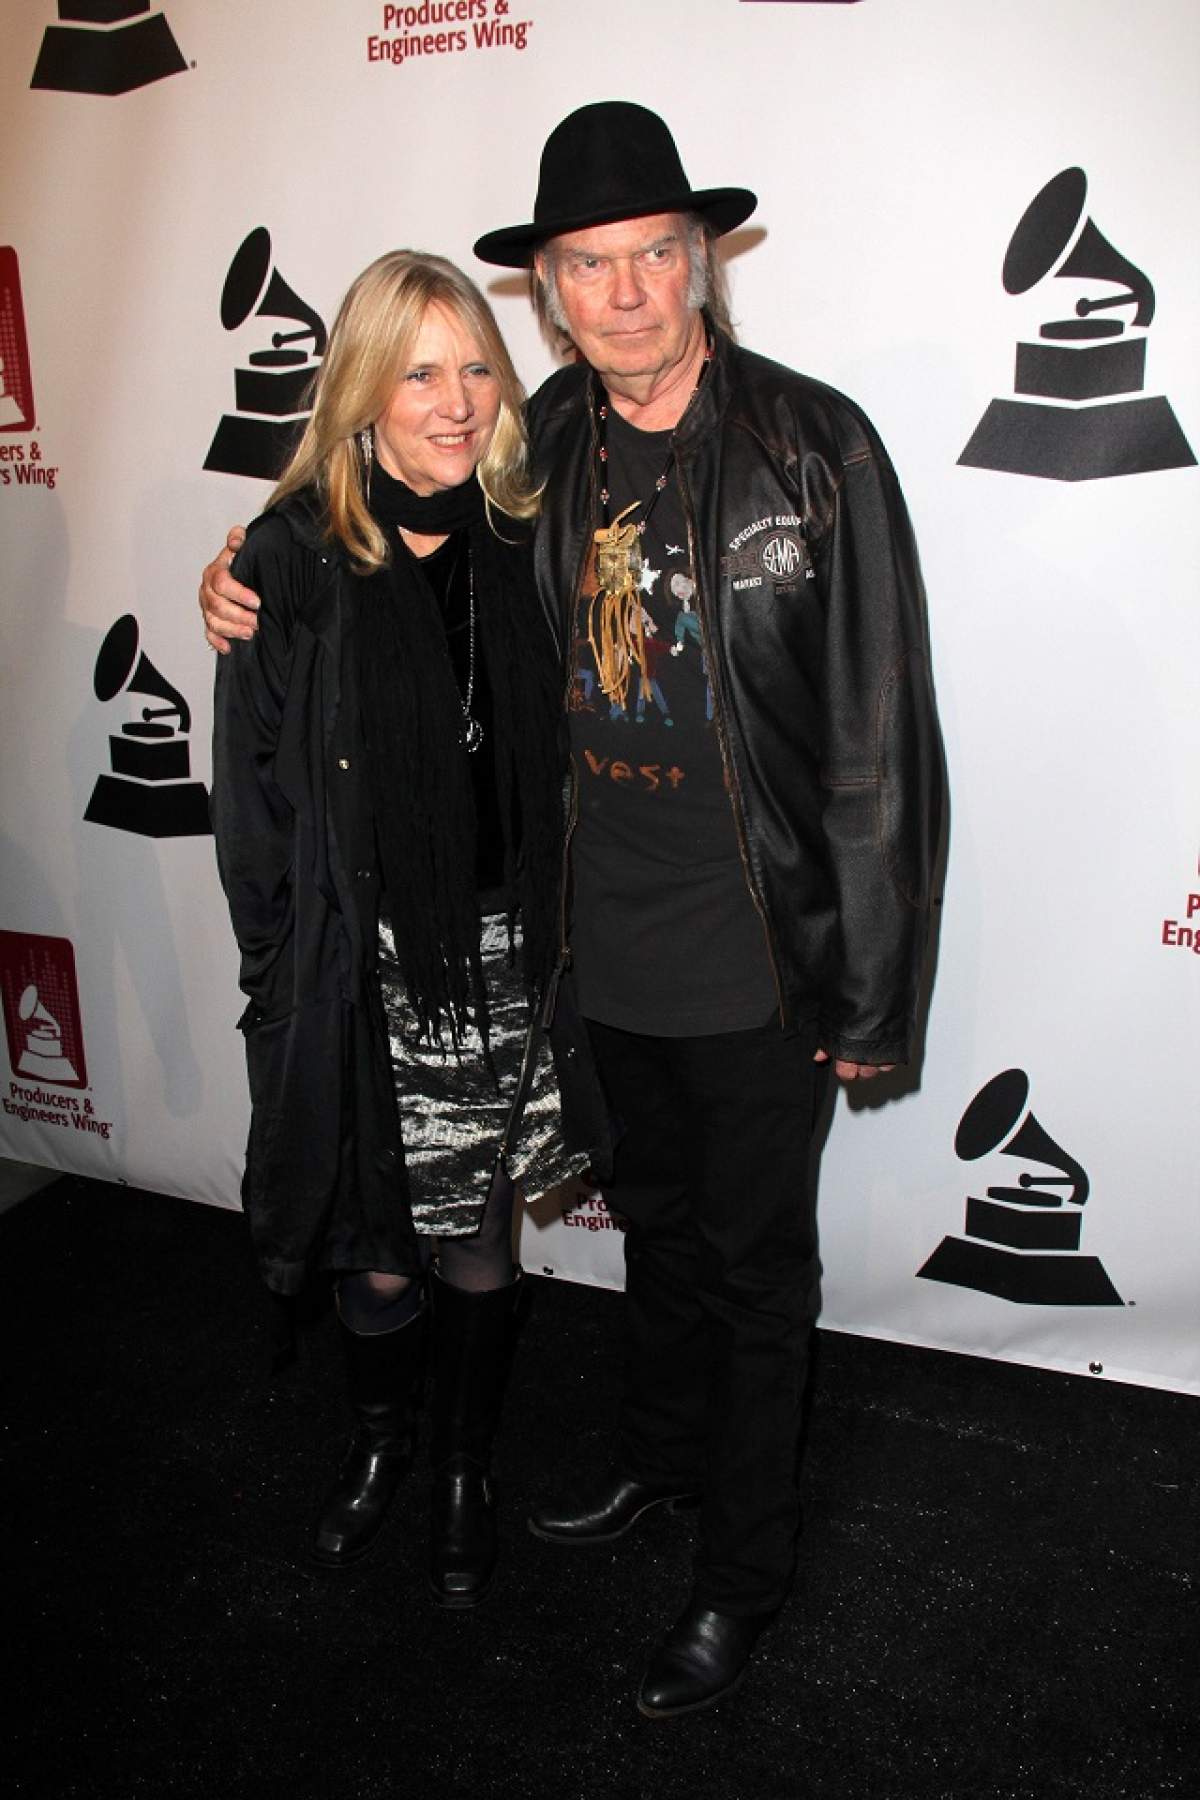 VESTE BOMBĂ! Neil Young divorţează după 36 de ani